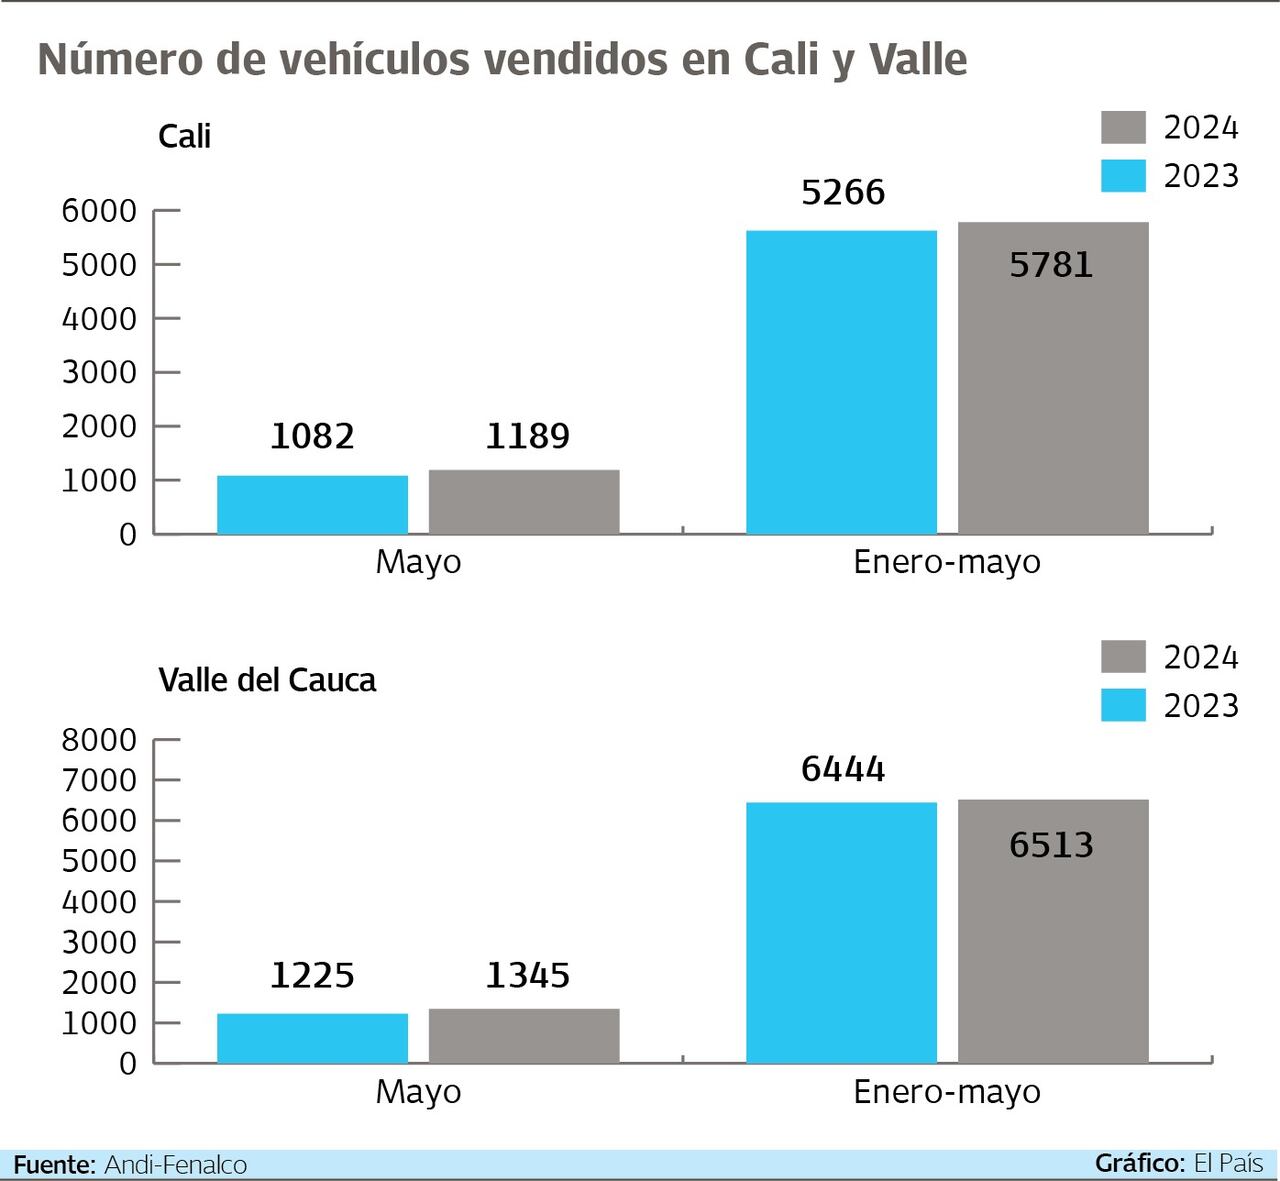 Comparativo de vehículos vendidos en Cali y el Valle mayo 2023,  mayo 2024.

Gráfico: El País   Fuente: Andi-Fenalco